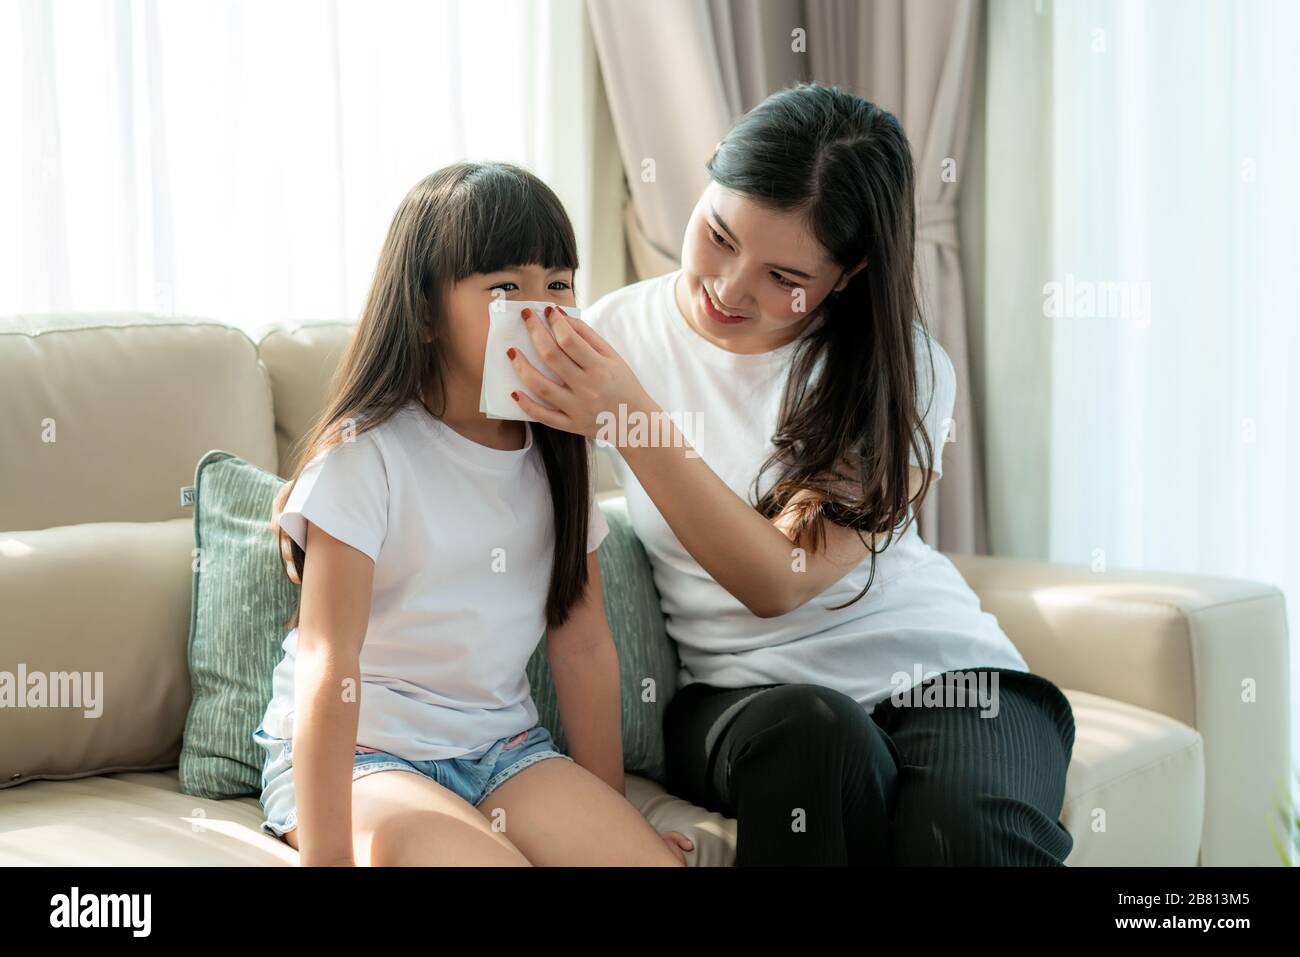 Porträt des geschnittenen asiatischen Mädchens, das mit ihrer Mutter in die Serviette bläst, hält es vorsichtig in der Nähe ihrer Nase. Bilder von Menschen, die sich krank und suff fühlen Stockfoto